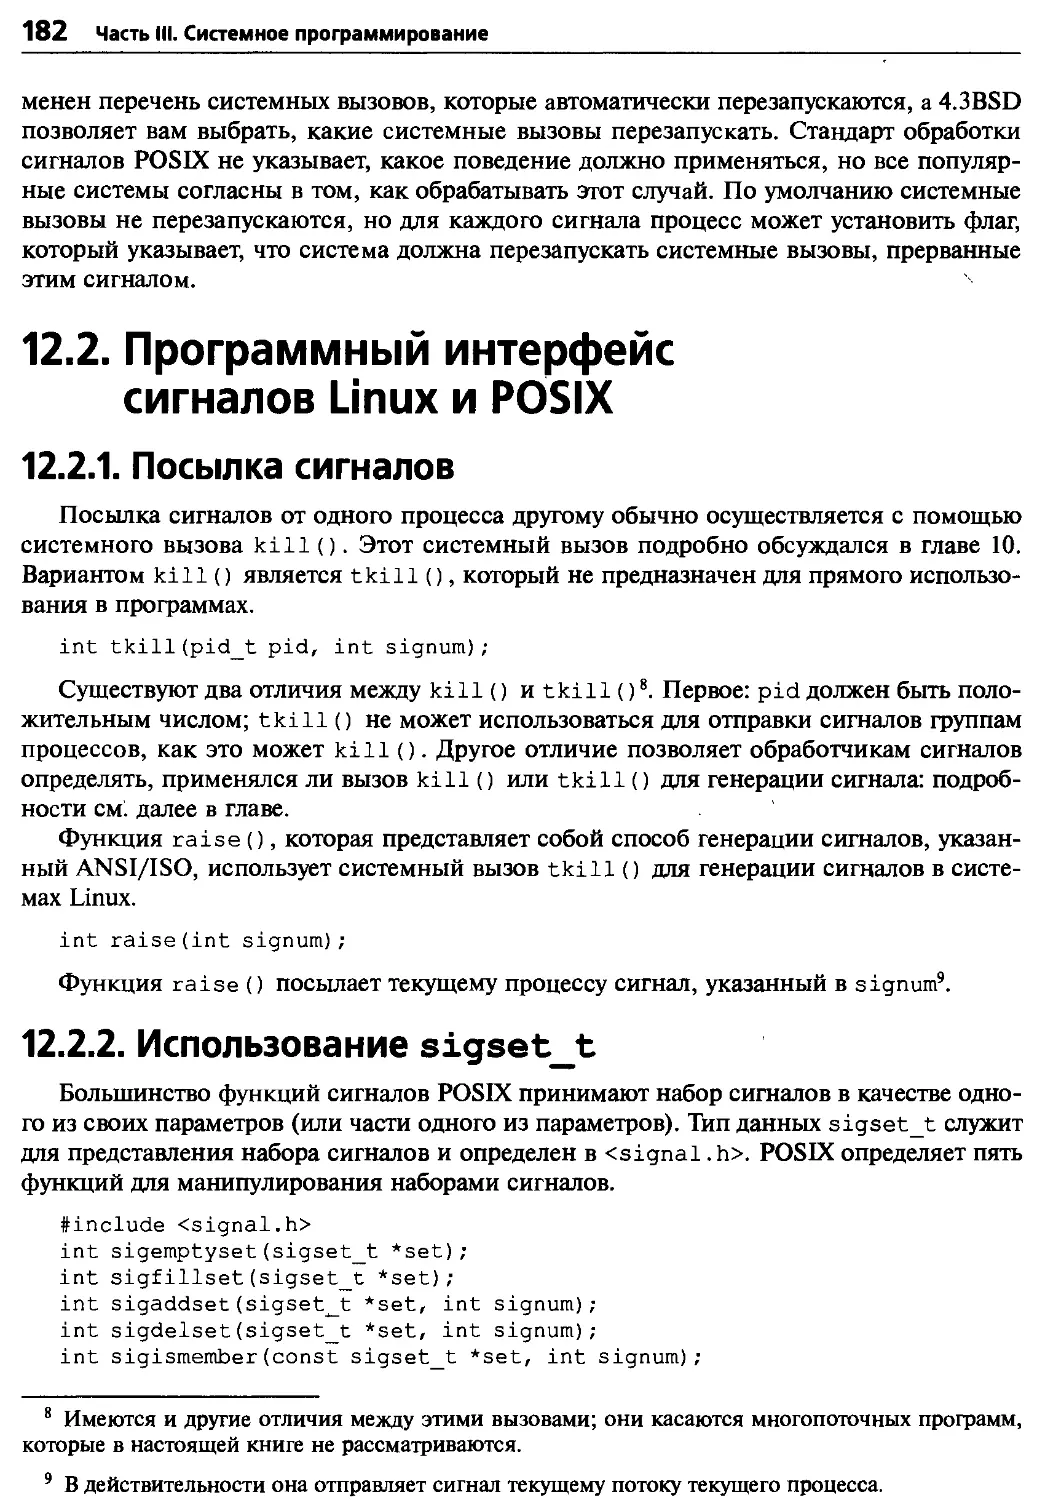 12.2. Программный интерфейс сигналов Linux и POSIX
12.2.1. Посылка сигналов
12.2.2. Использование sigsett